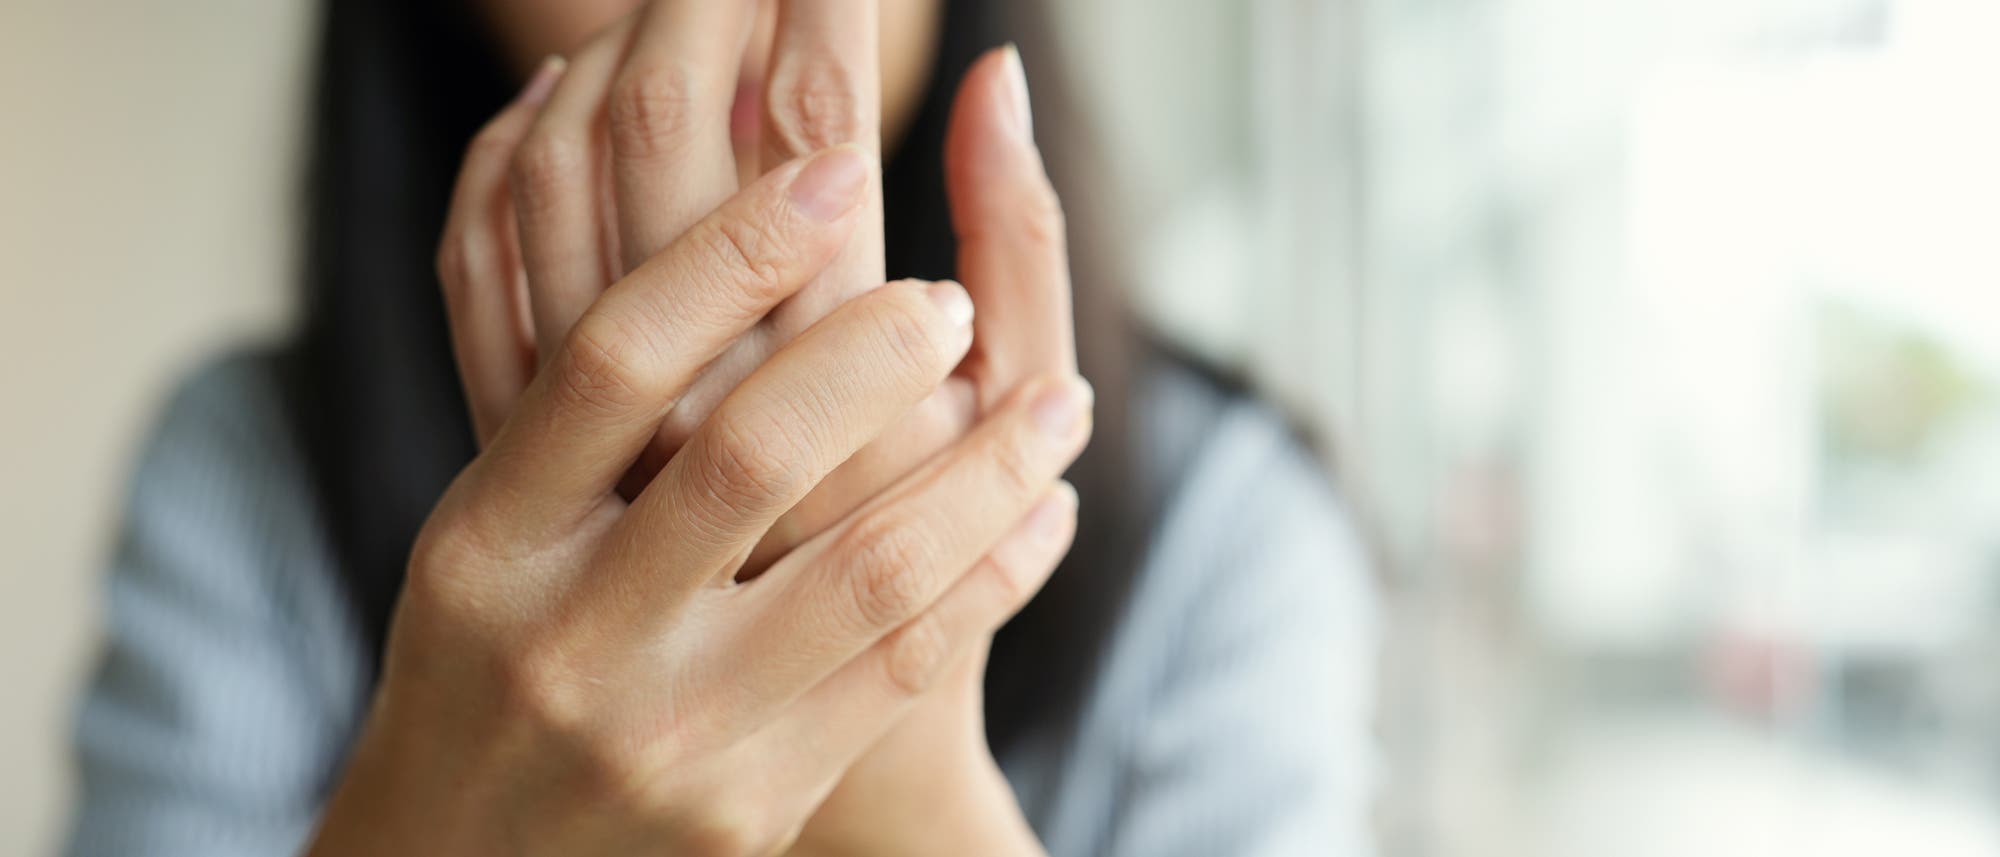 Eine Frau verschränkt ihre Hände in einer schmerzhaft anmutenden Geste